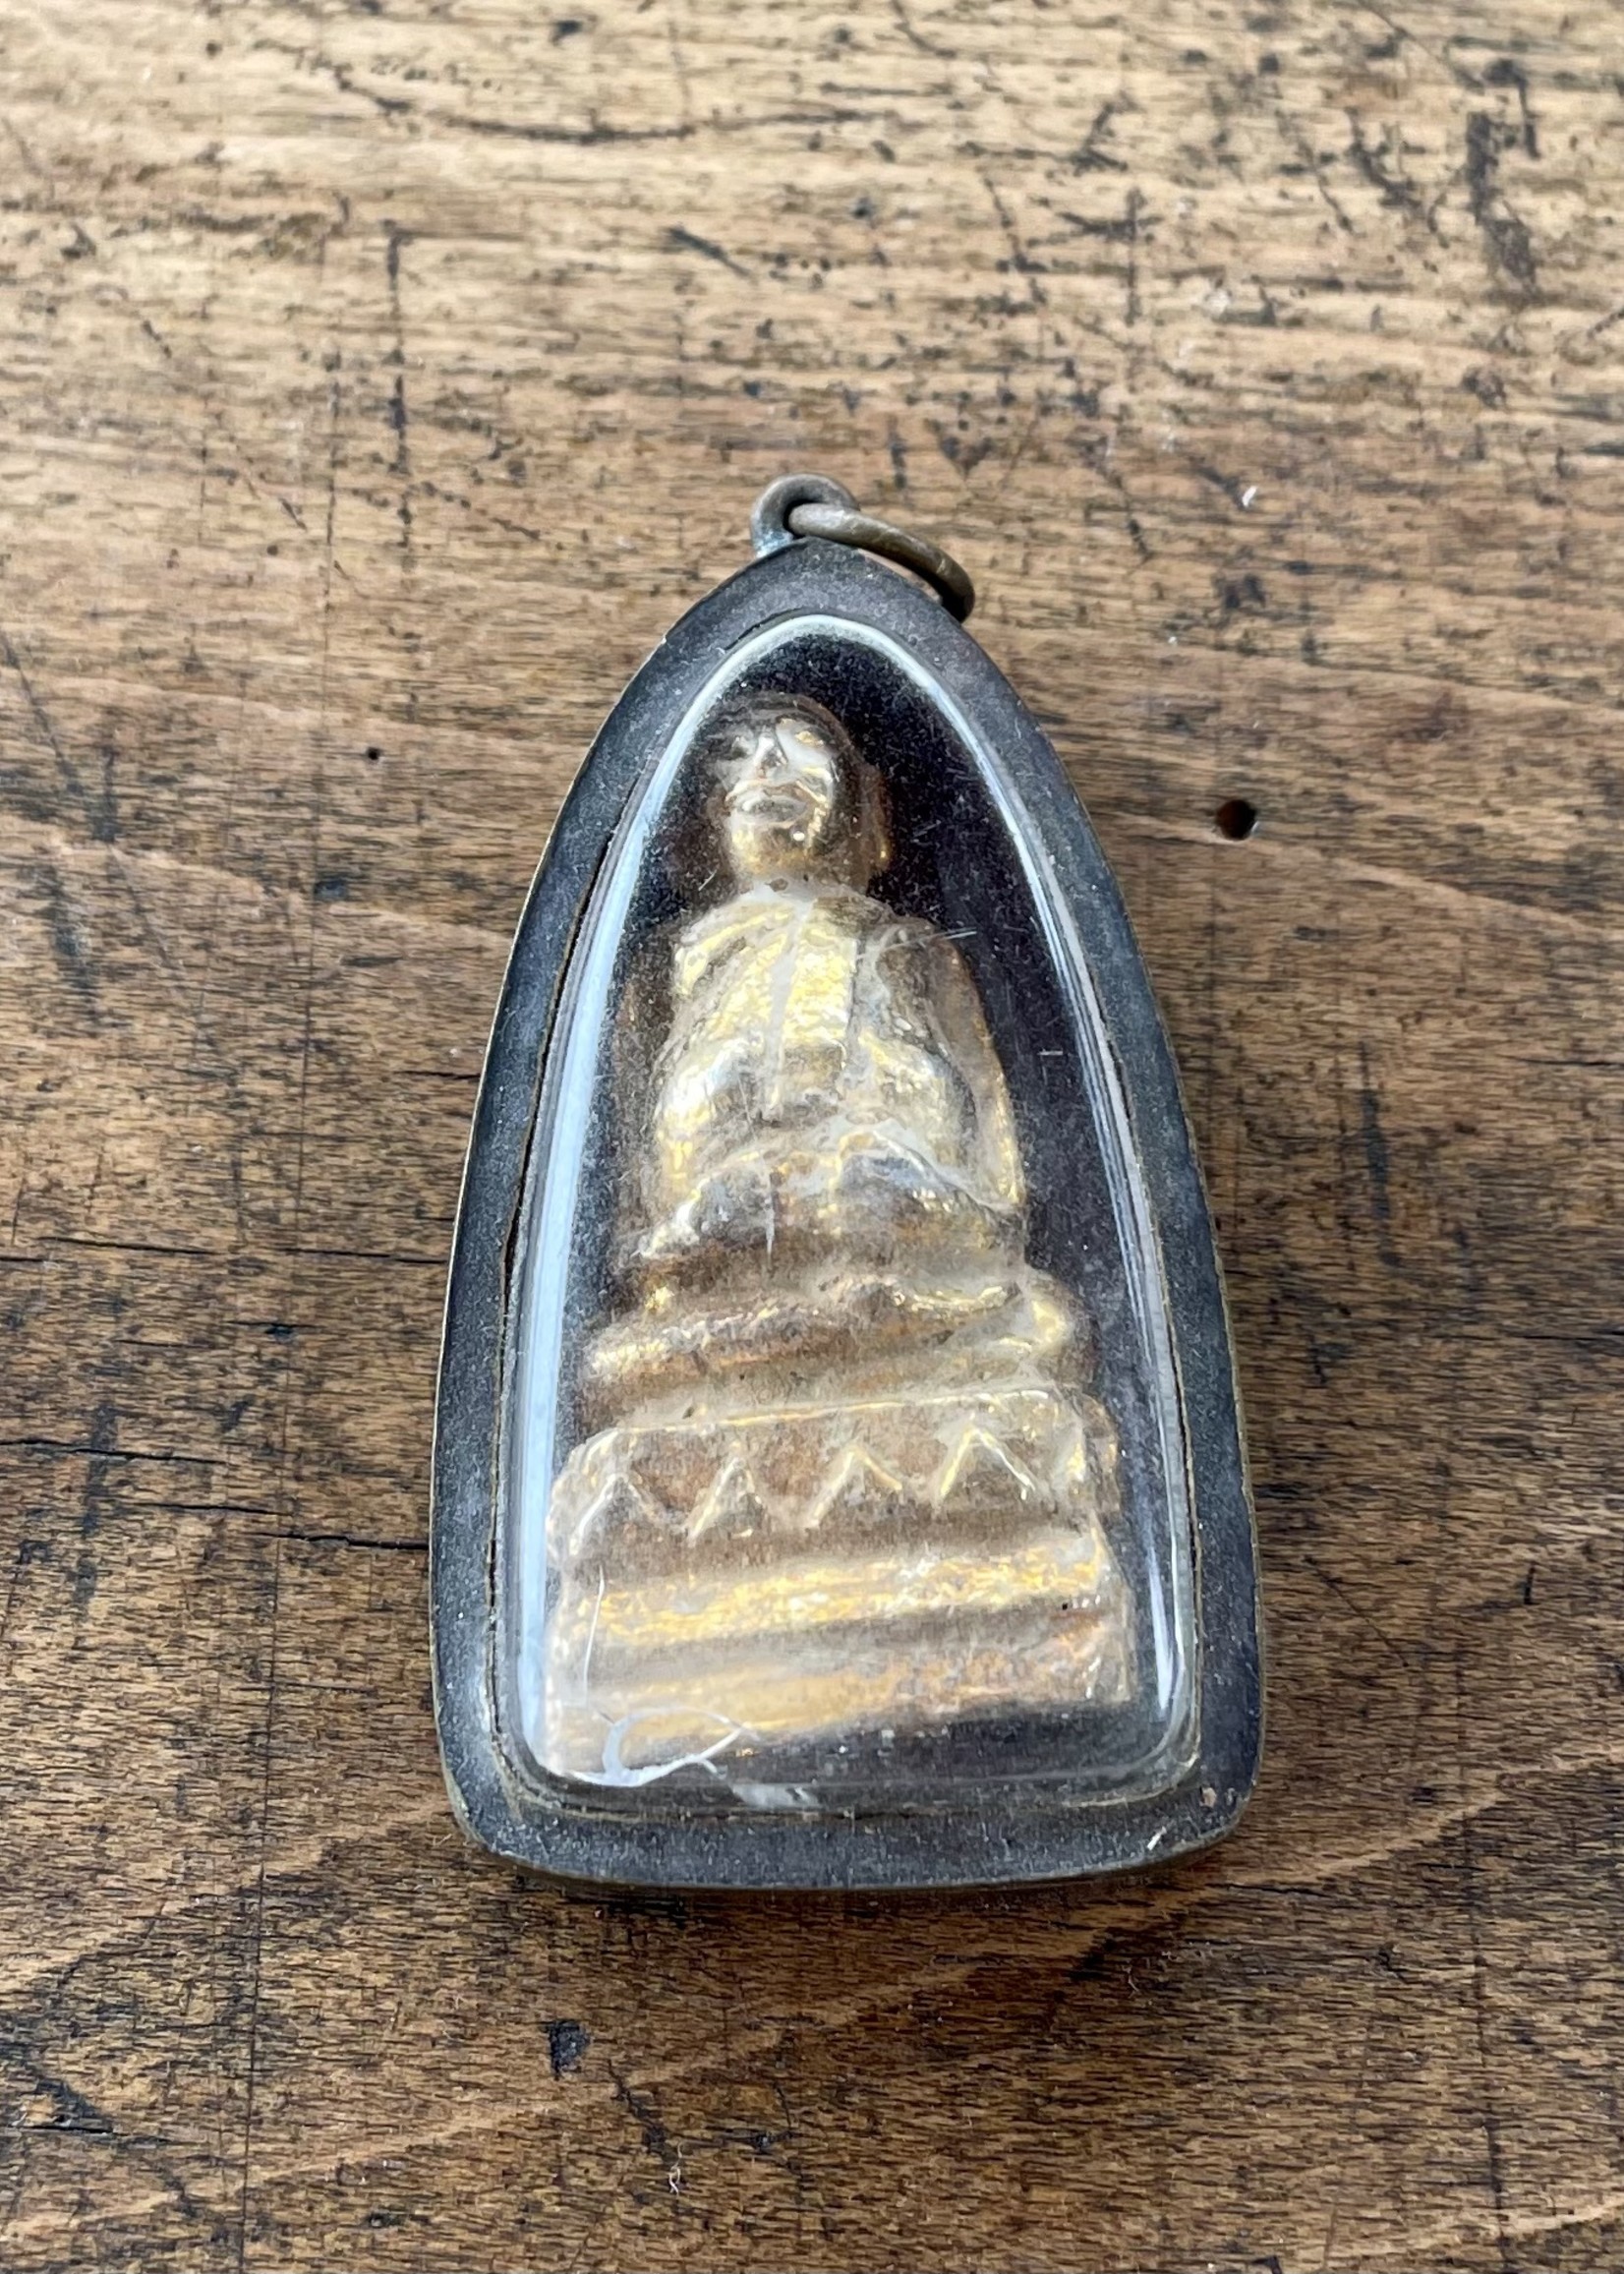 Mamou Boeddha Amulet